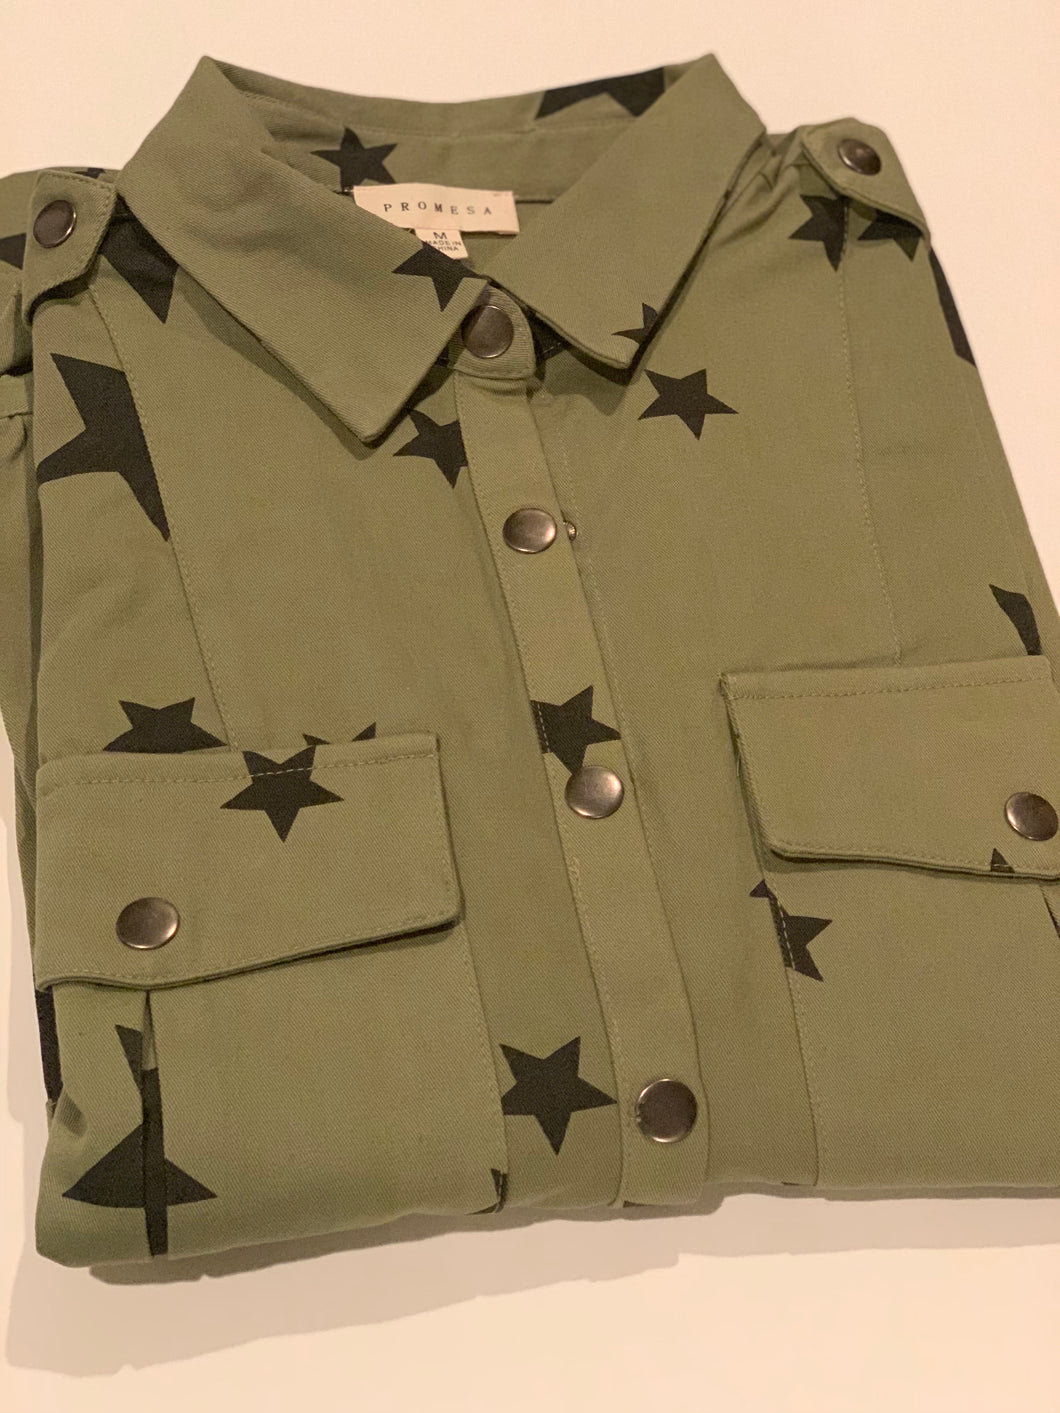 Seeing Stars shirt jacket